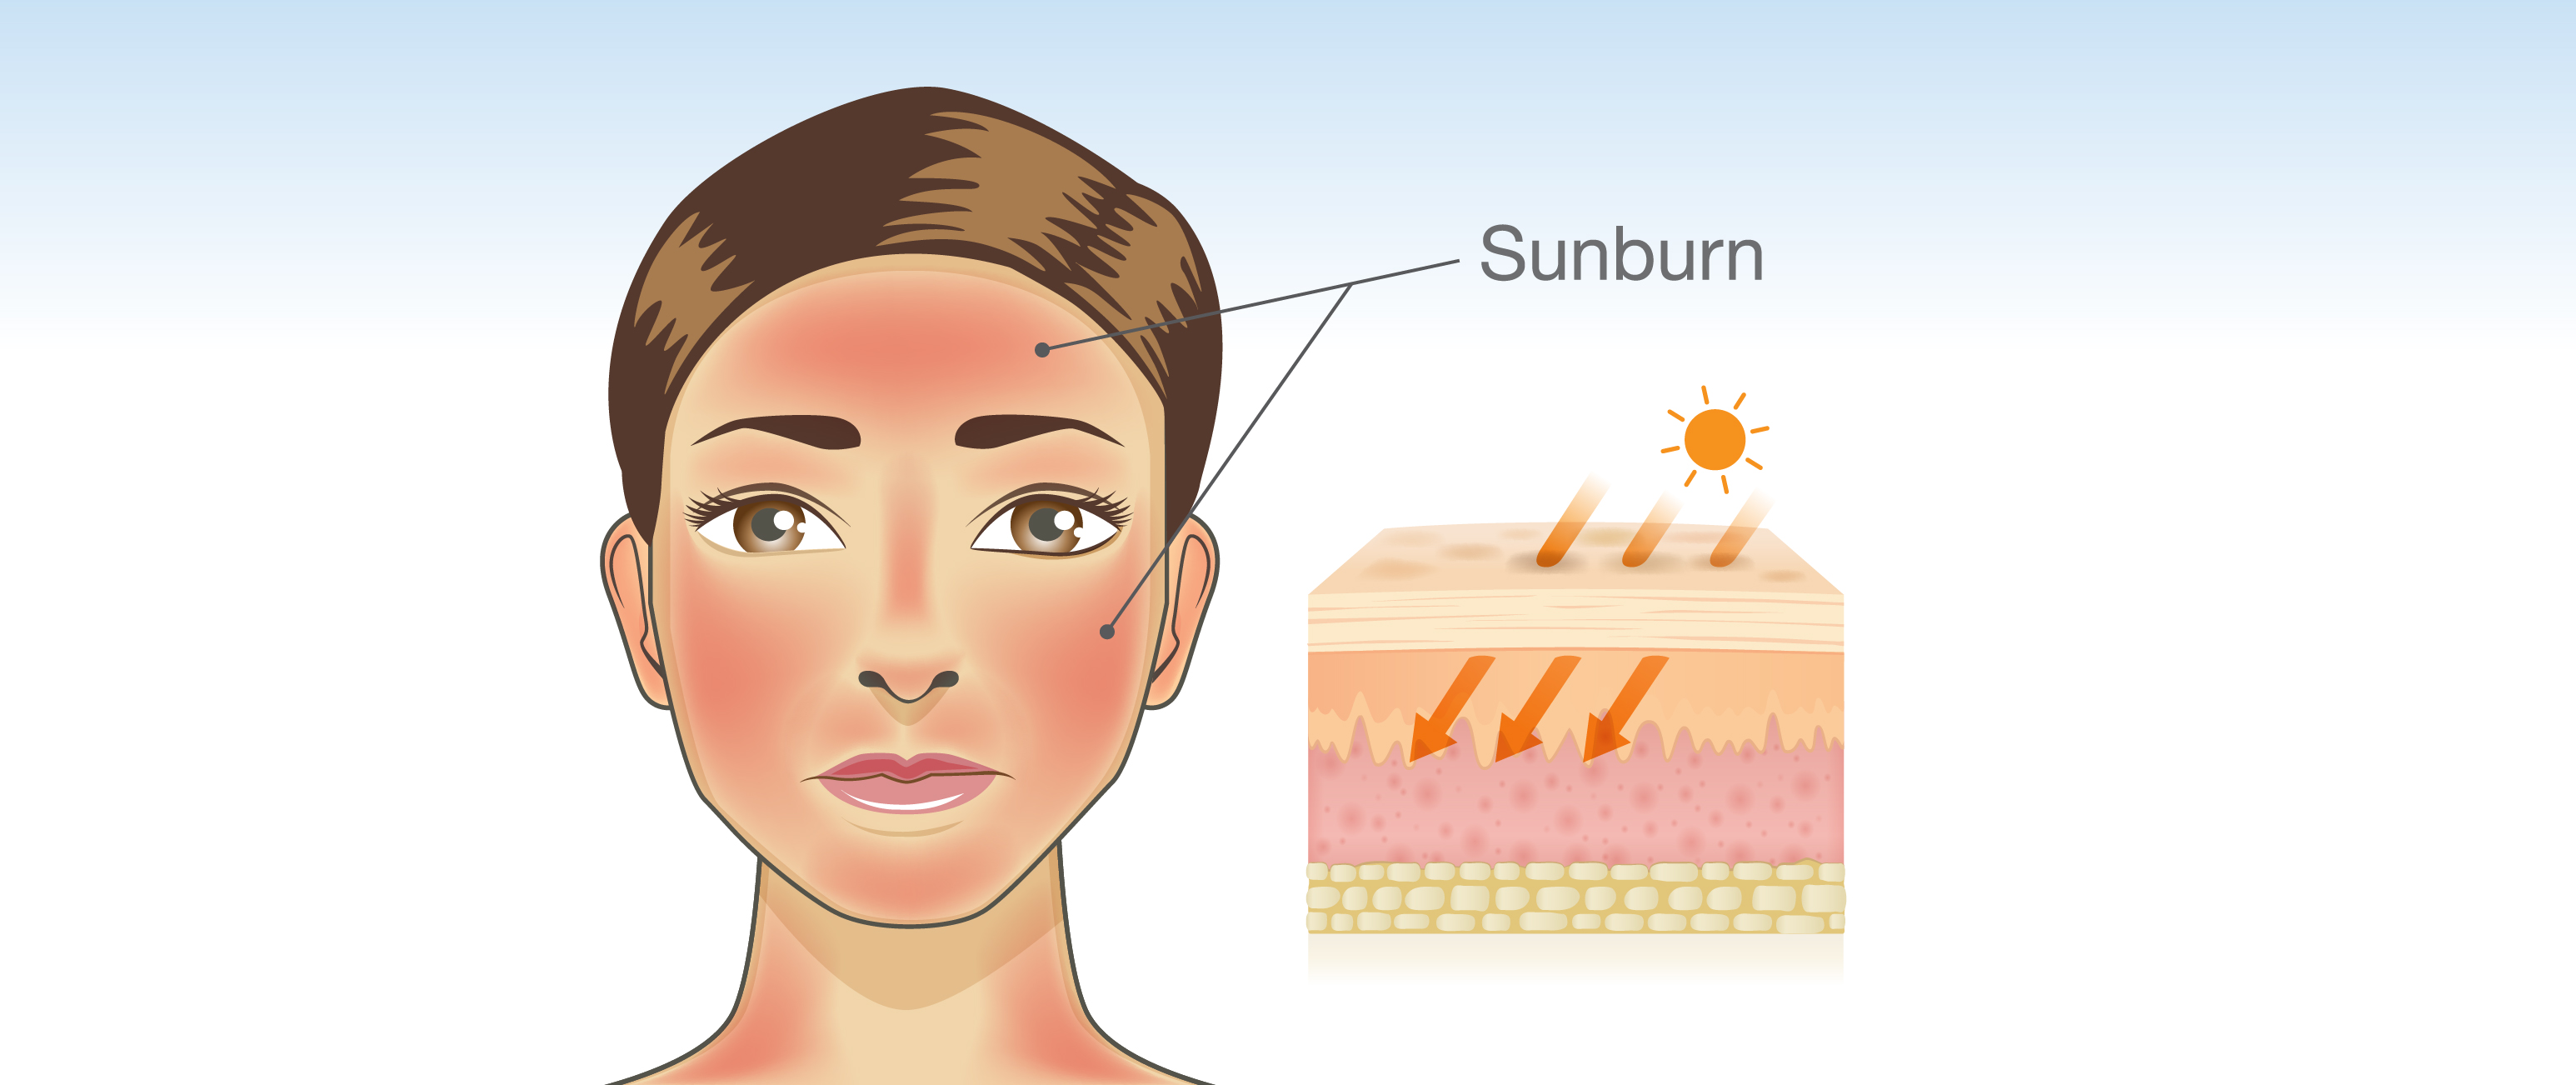 Sunburn after special image